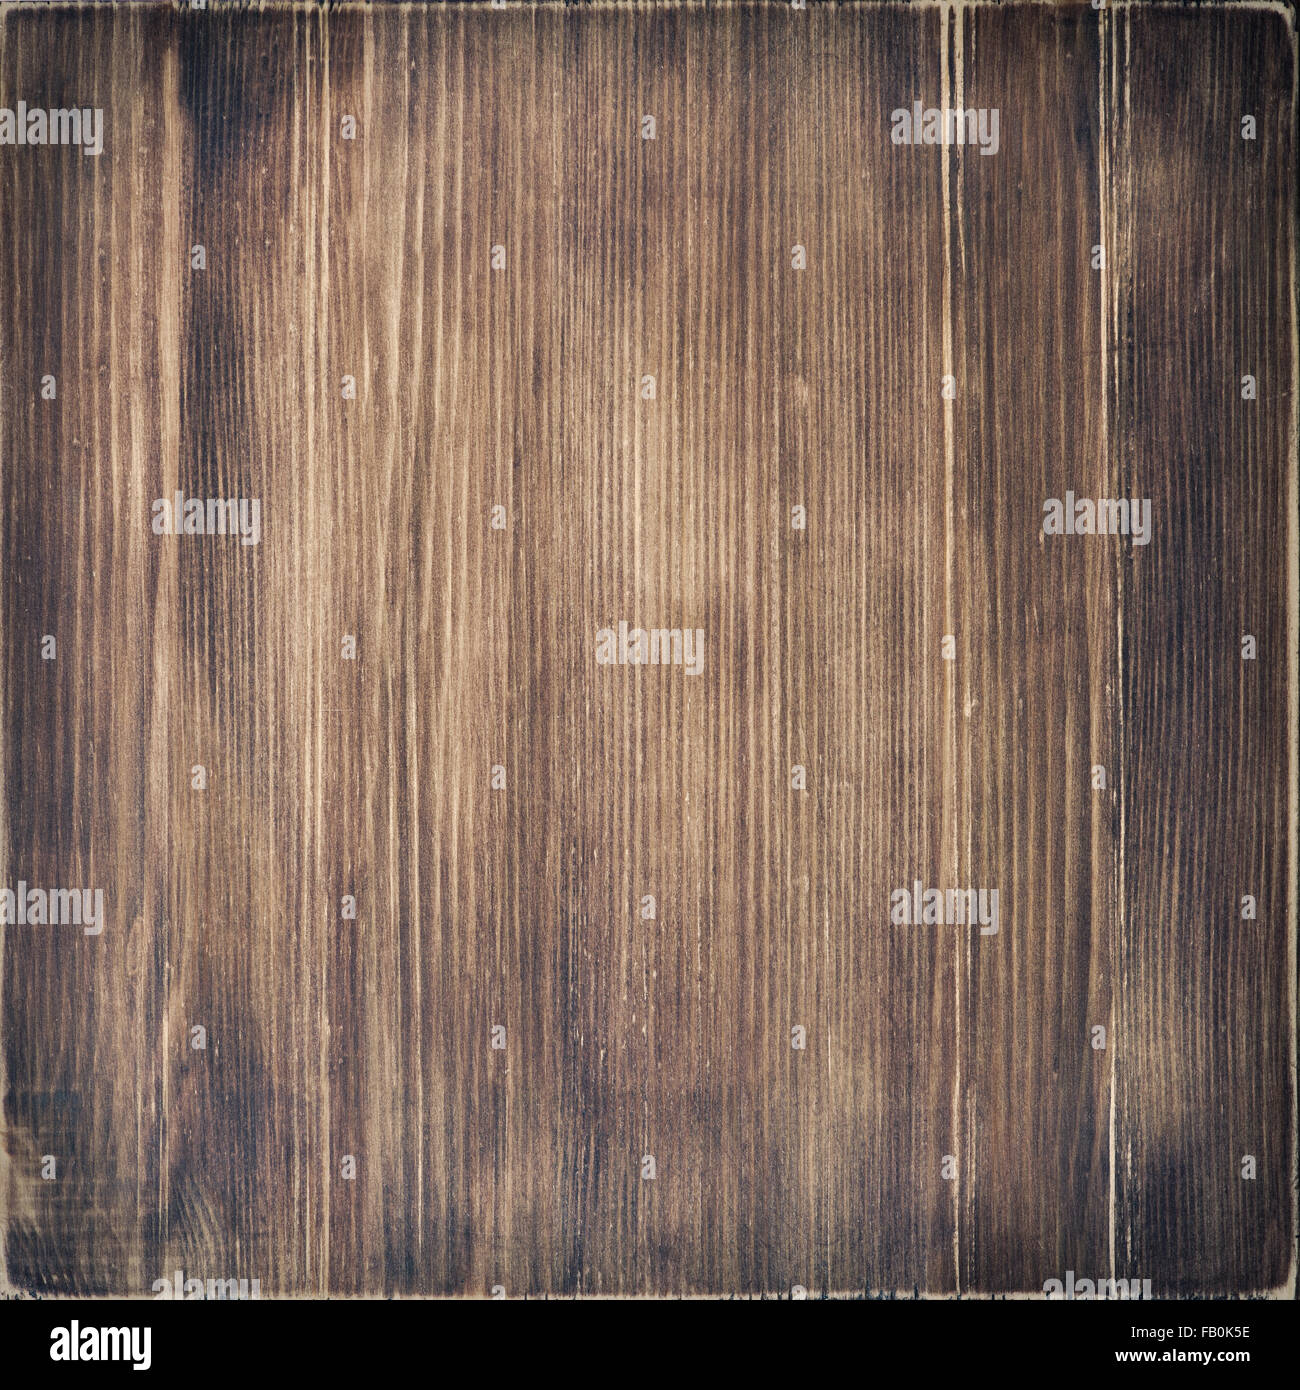 Wooden texture, dark brown wood background Stock Photo